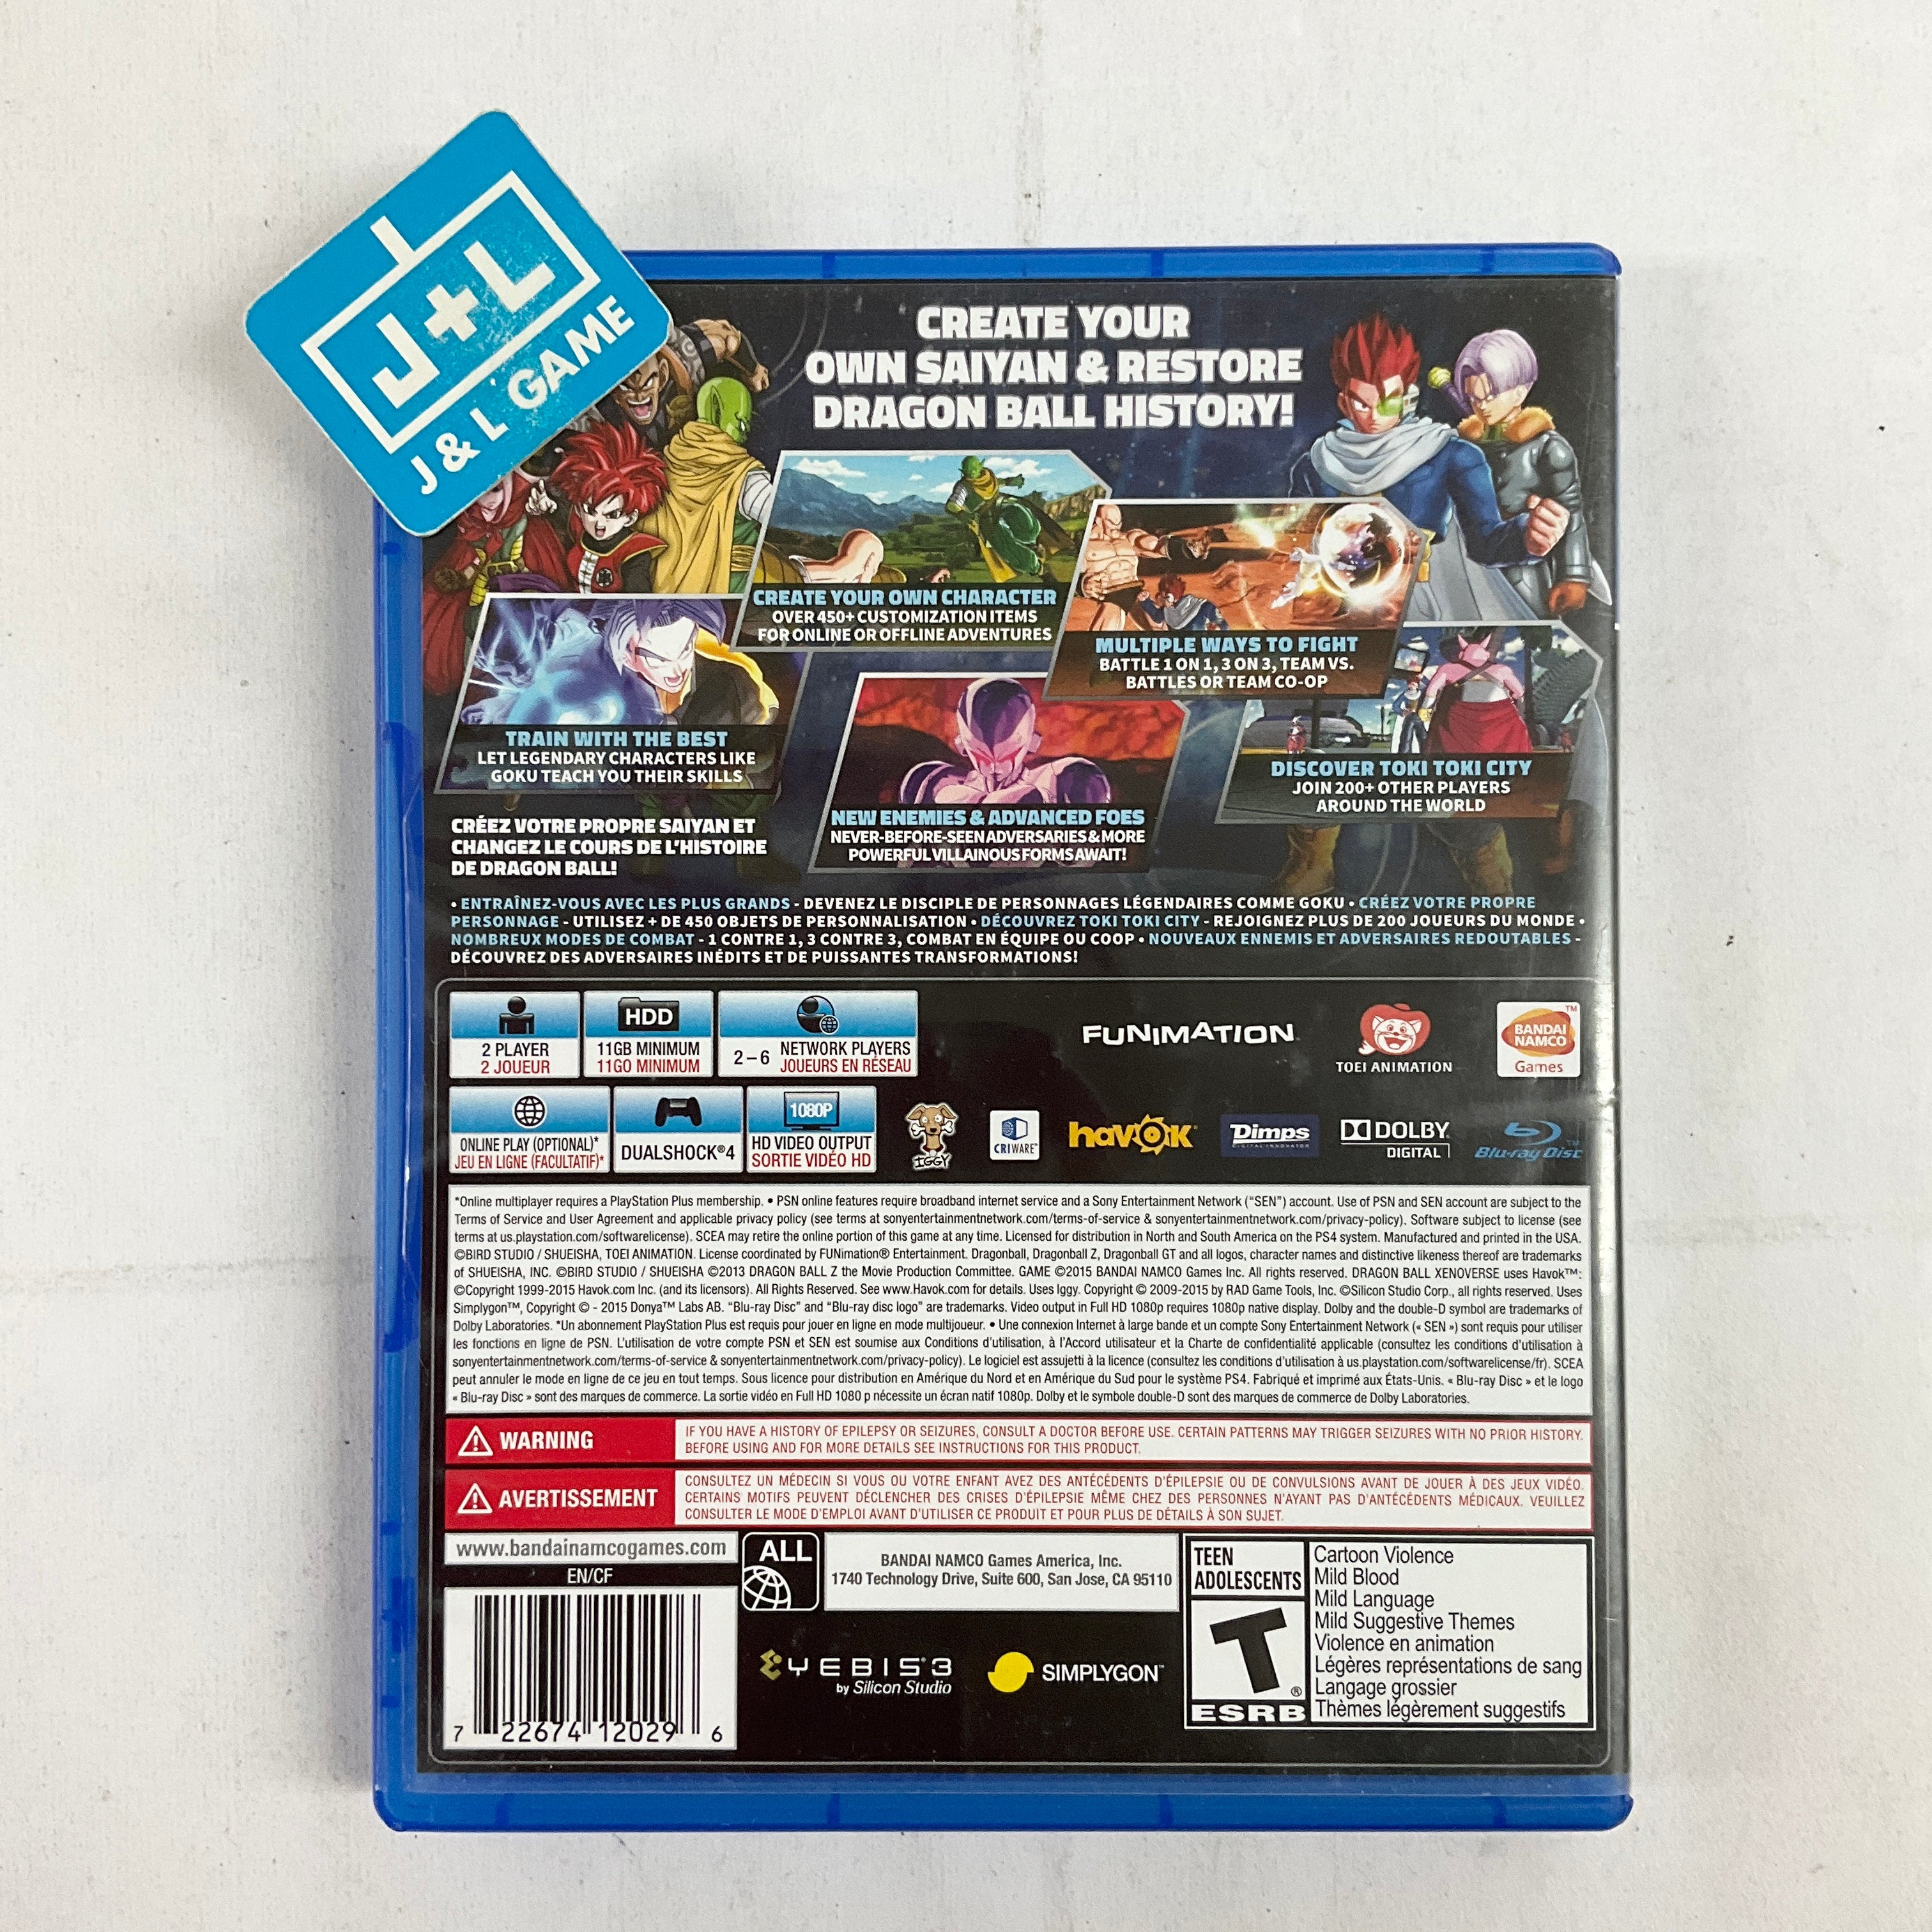 Dragon Ball: Xenoverse - (PS4) PlayStation 4 [Pre-Owned] Video Games Bandai Namco Games   